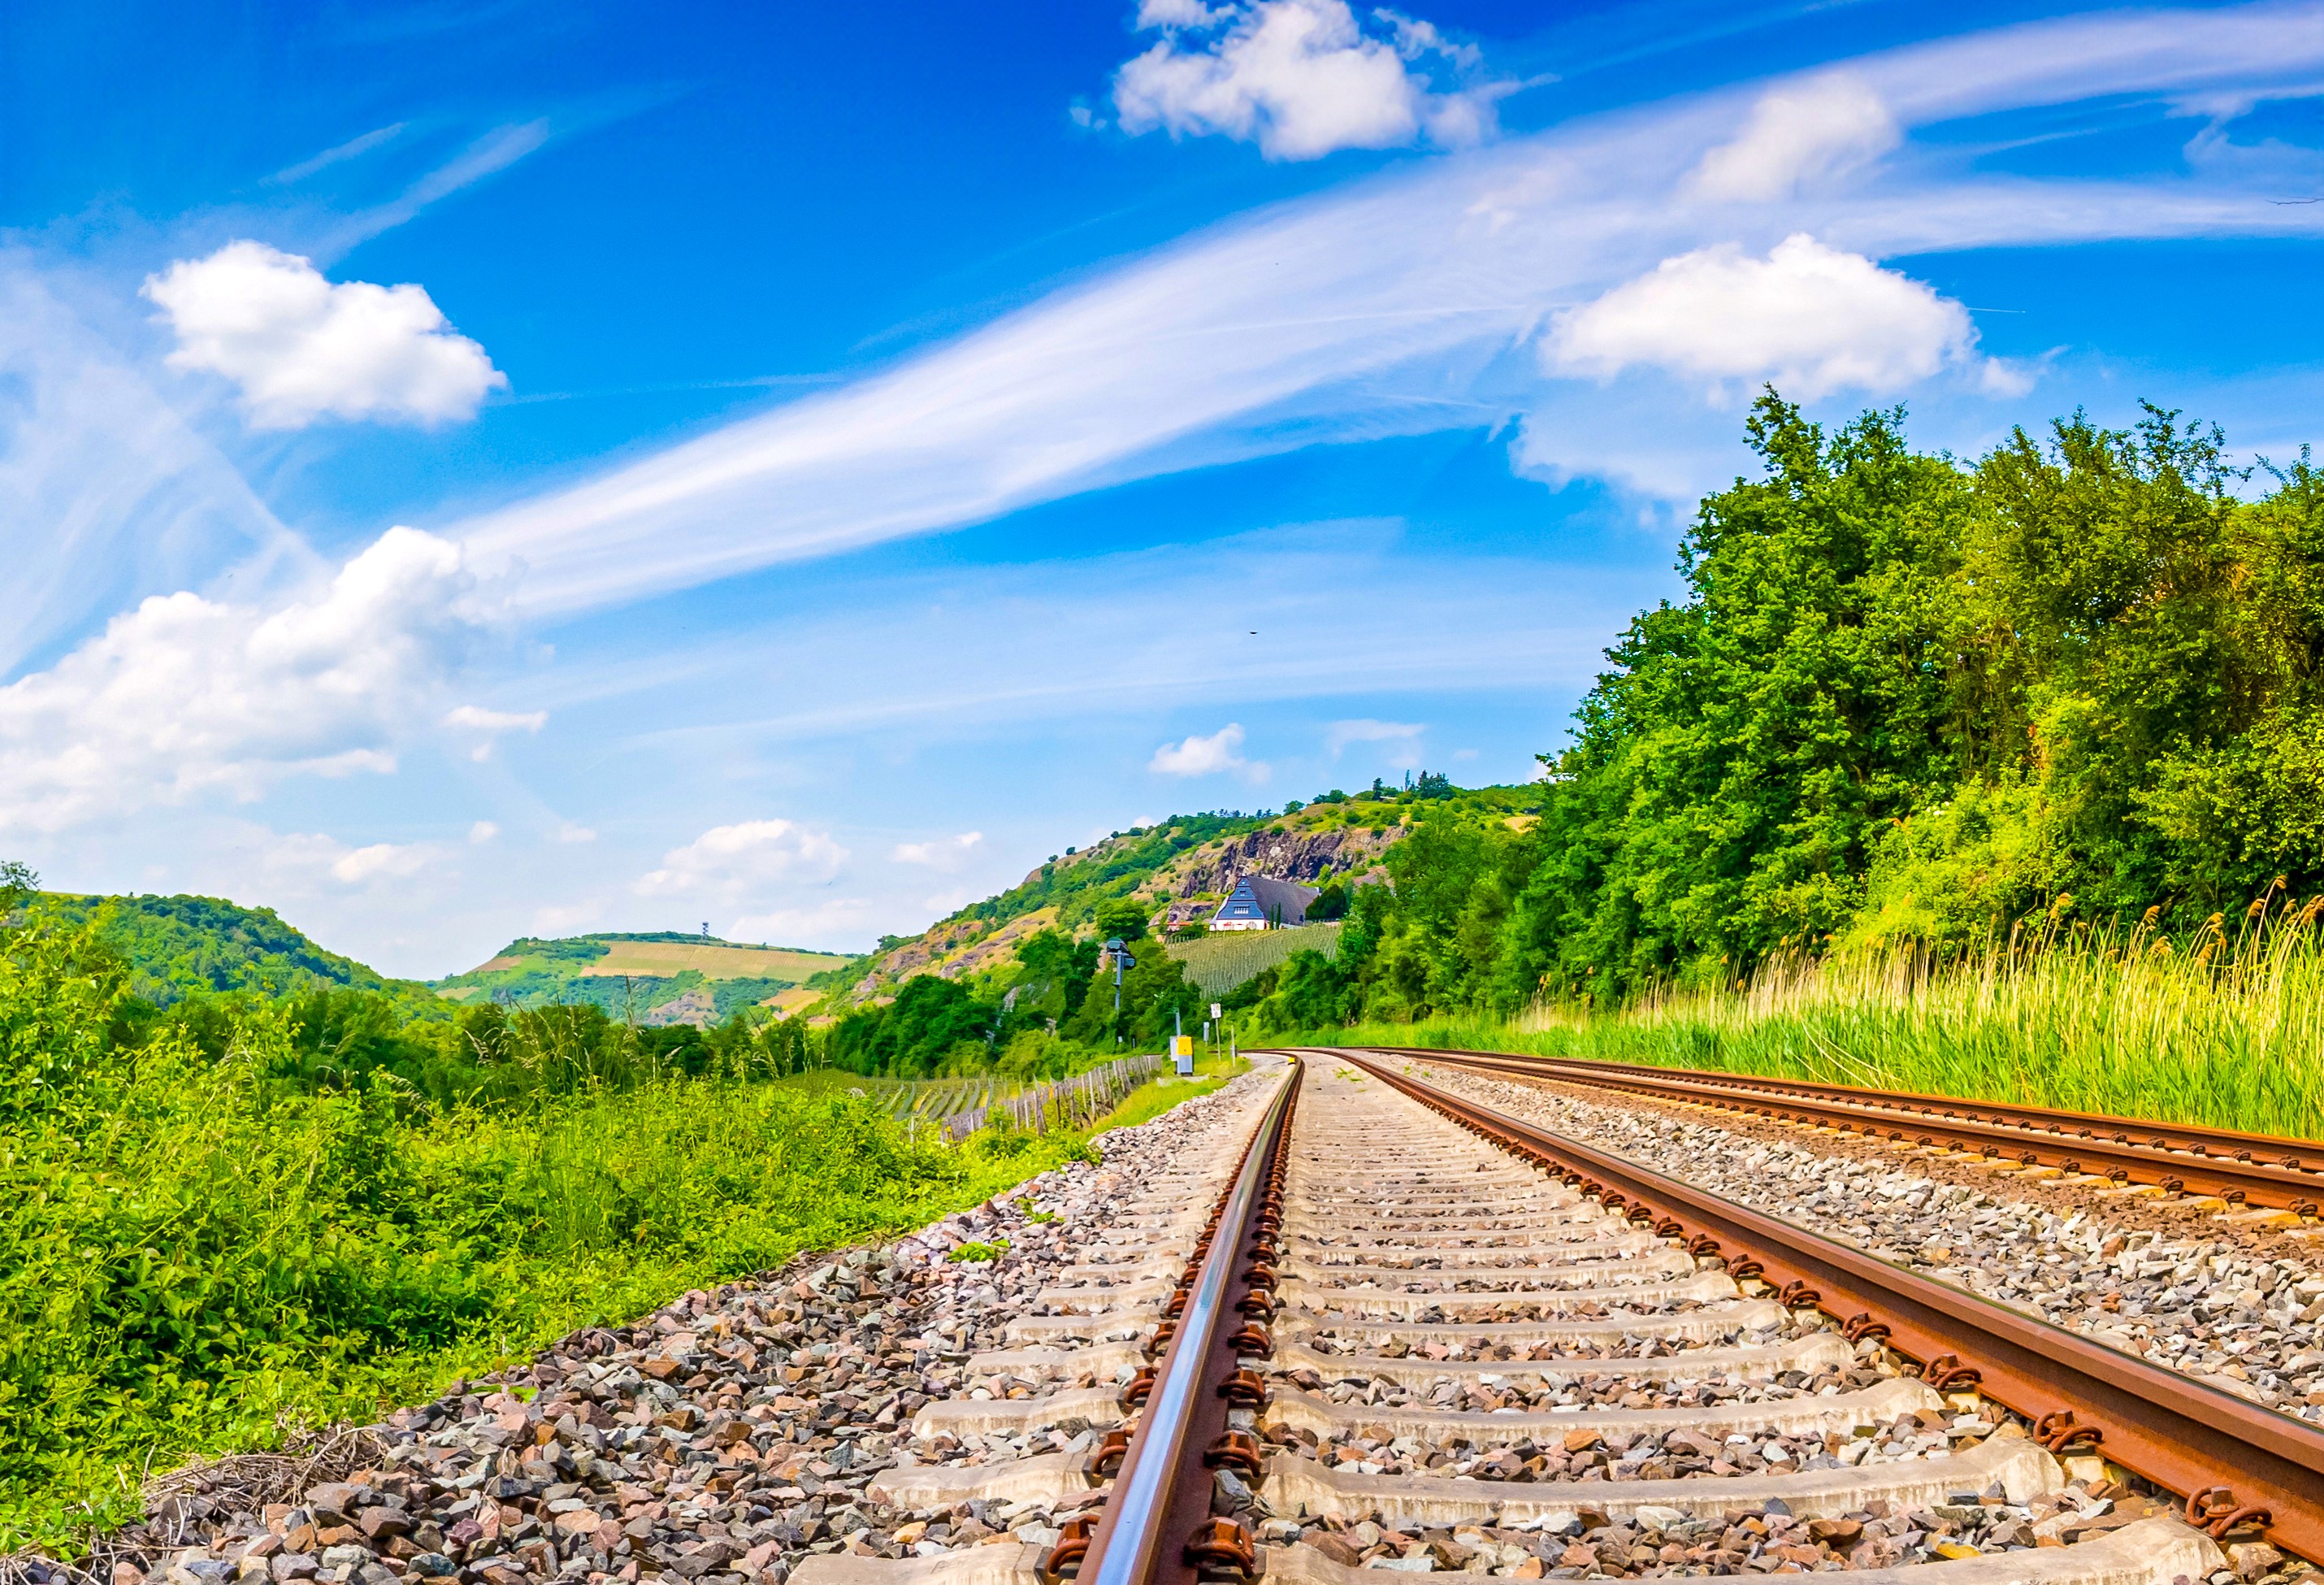 Railway tracks in landscape